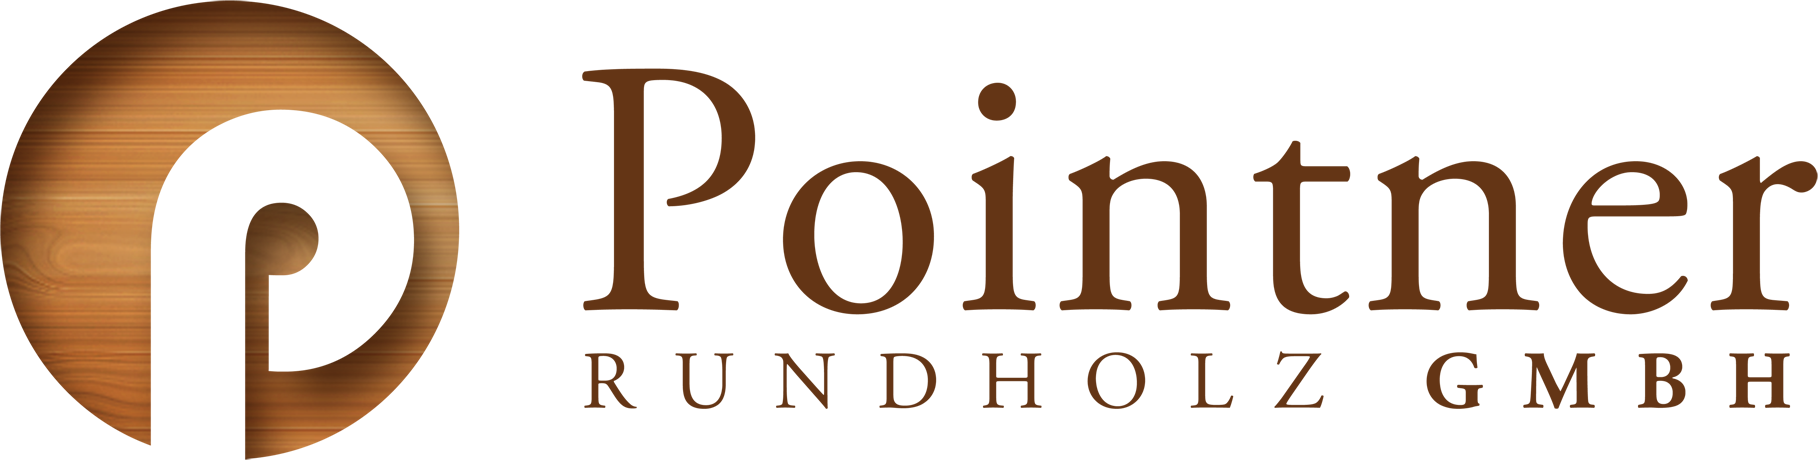 Poitner-Rundholz_logo.png